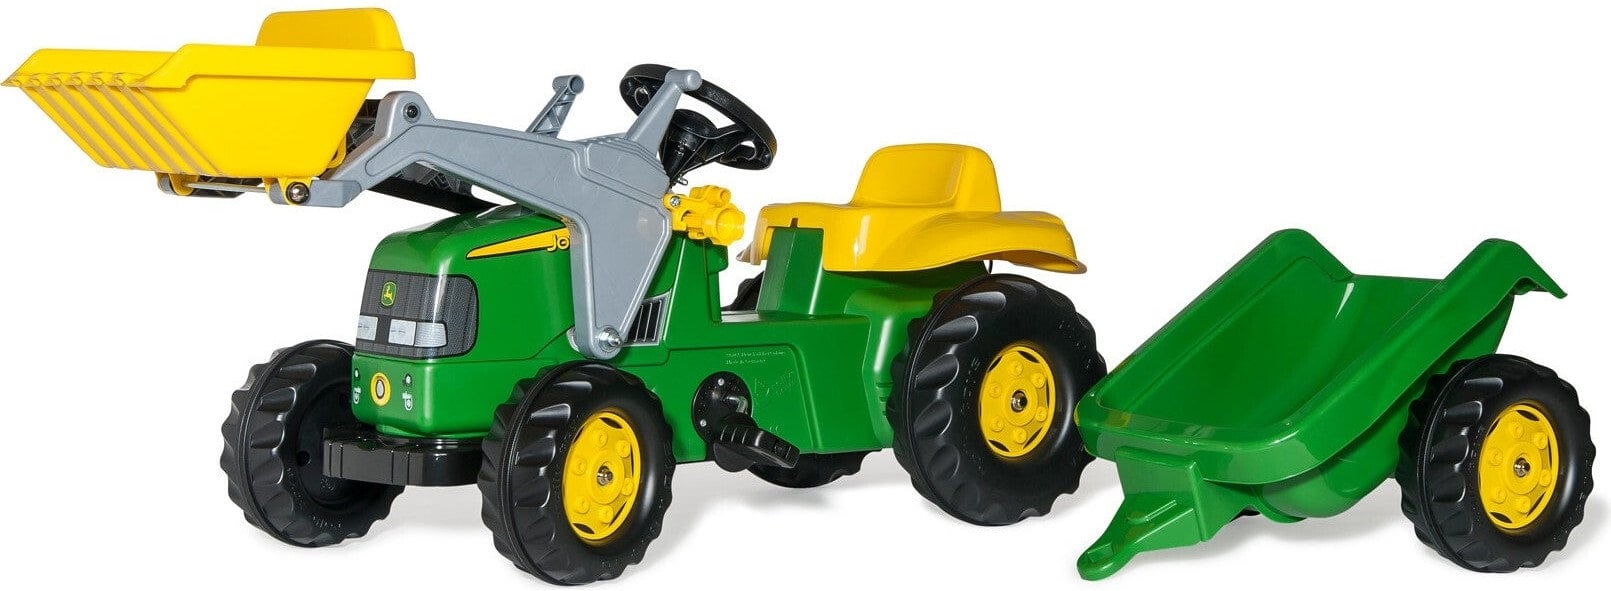 John Deere Kid Tractor With Trailer